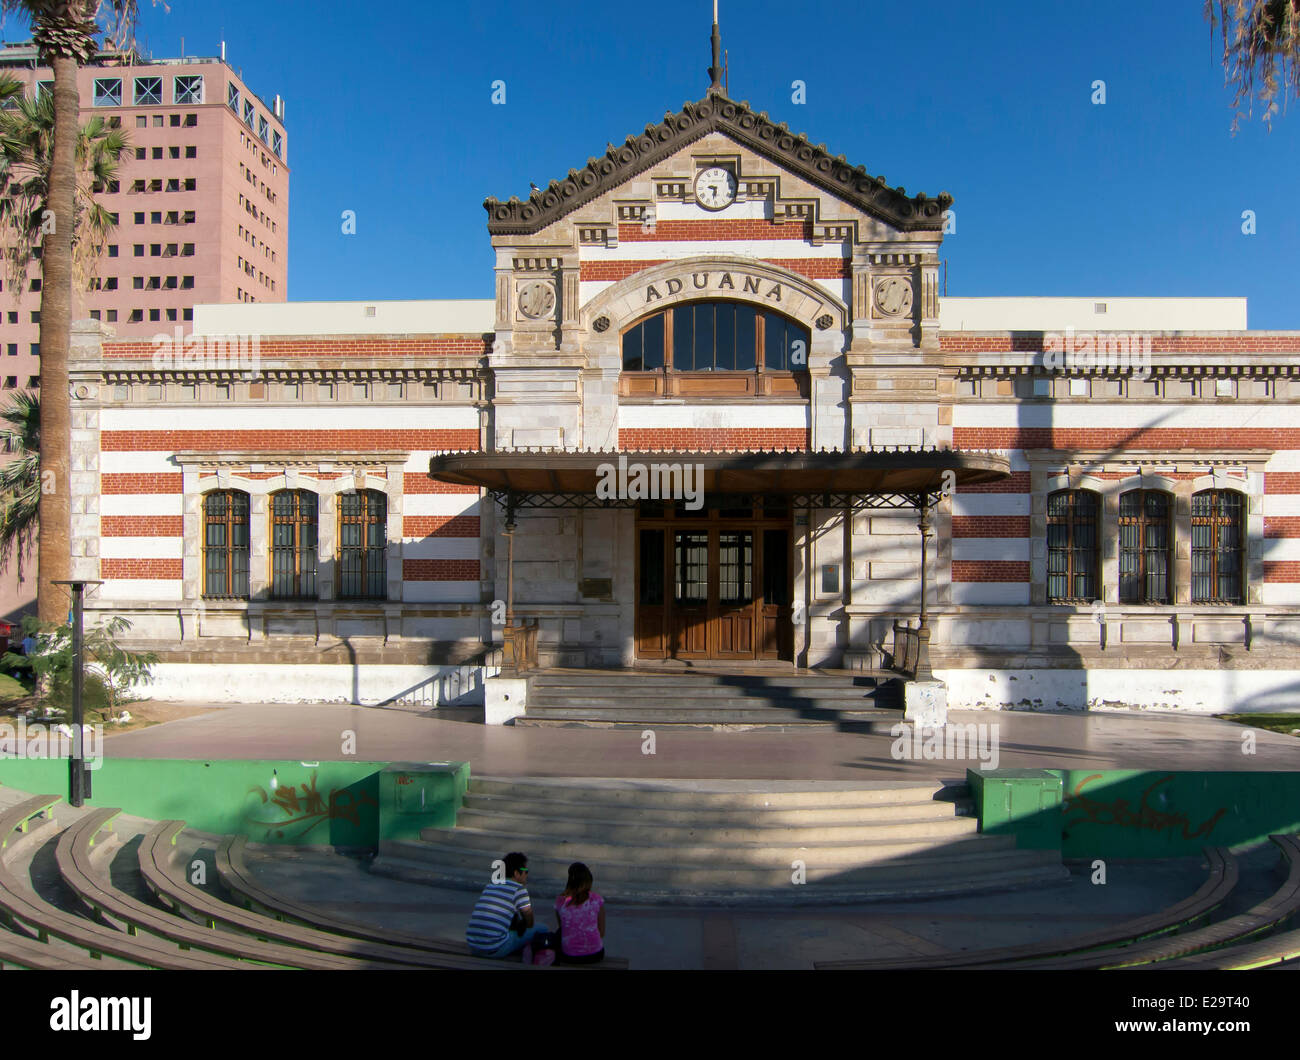 Le Chili, Arica et Parinacota région, Arica, Ex Aduana, un ancien édifice des douanes construit en 1874 dans les ateliers de Gustave Banque D'Images